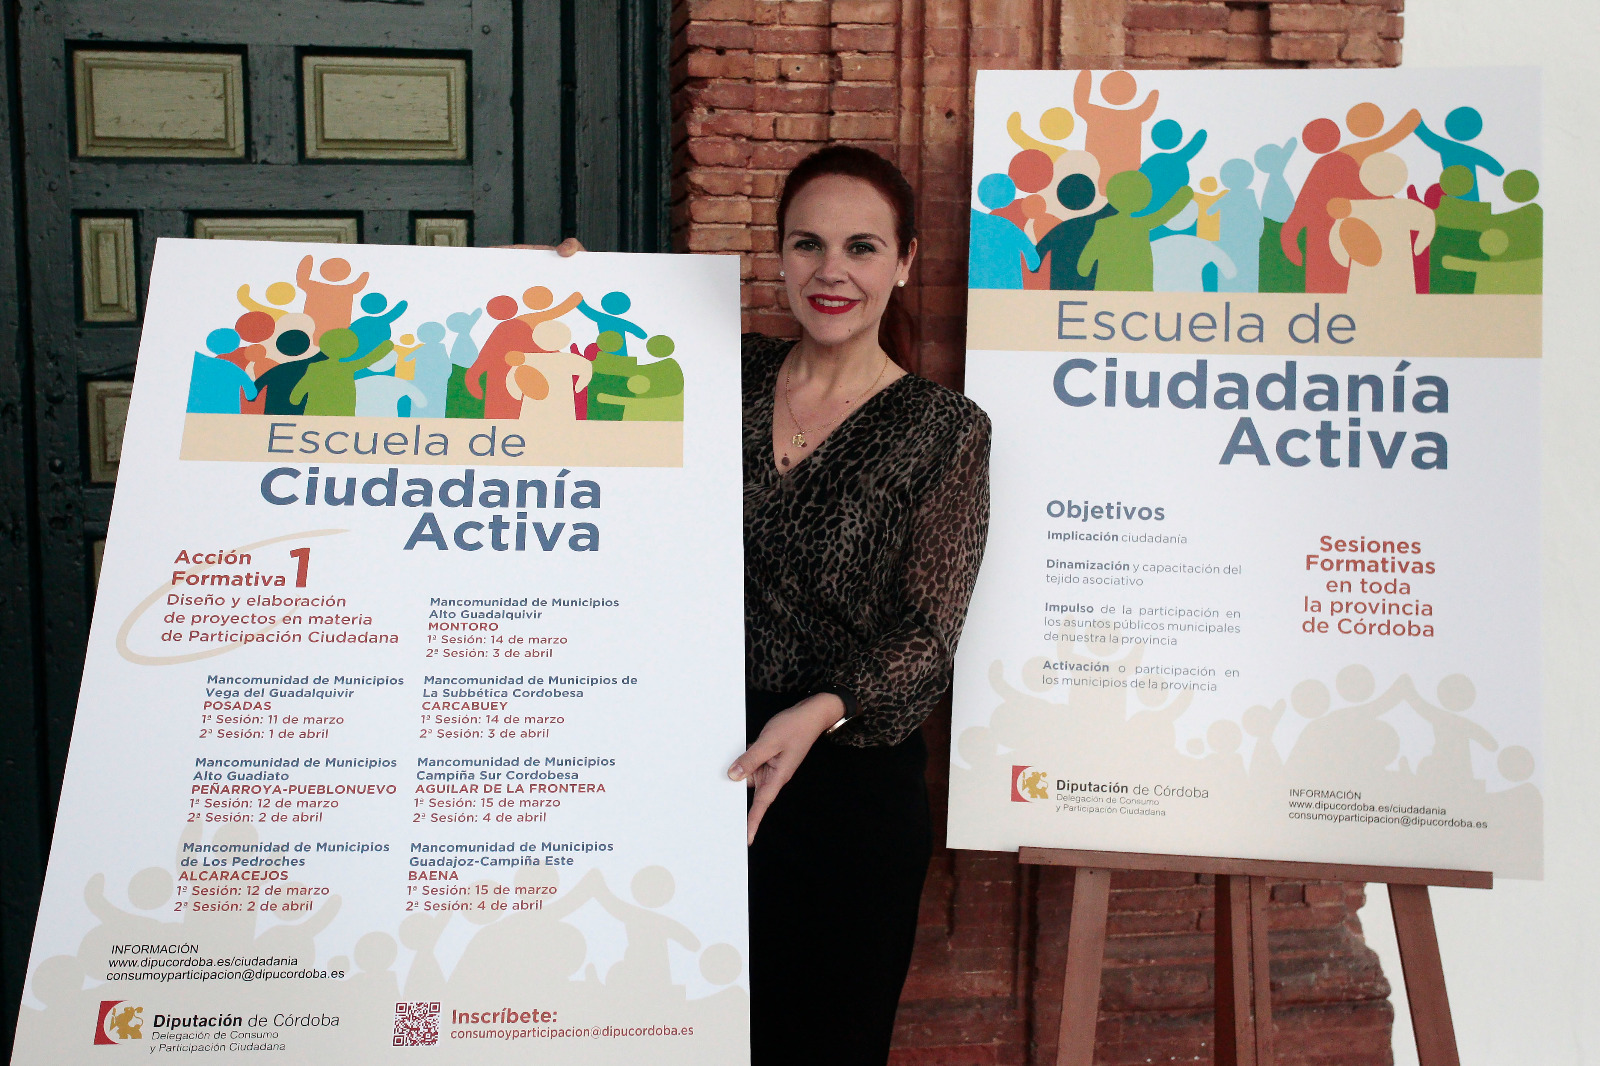 La Diputación pone en marcha la Escuela de Ciudadanía Activa para impulsar en la provincia procesos participativos.